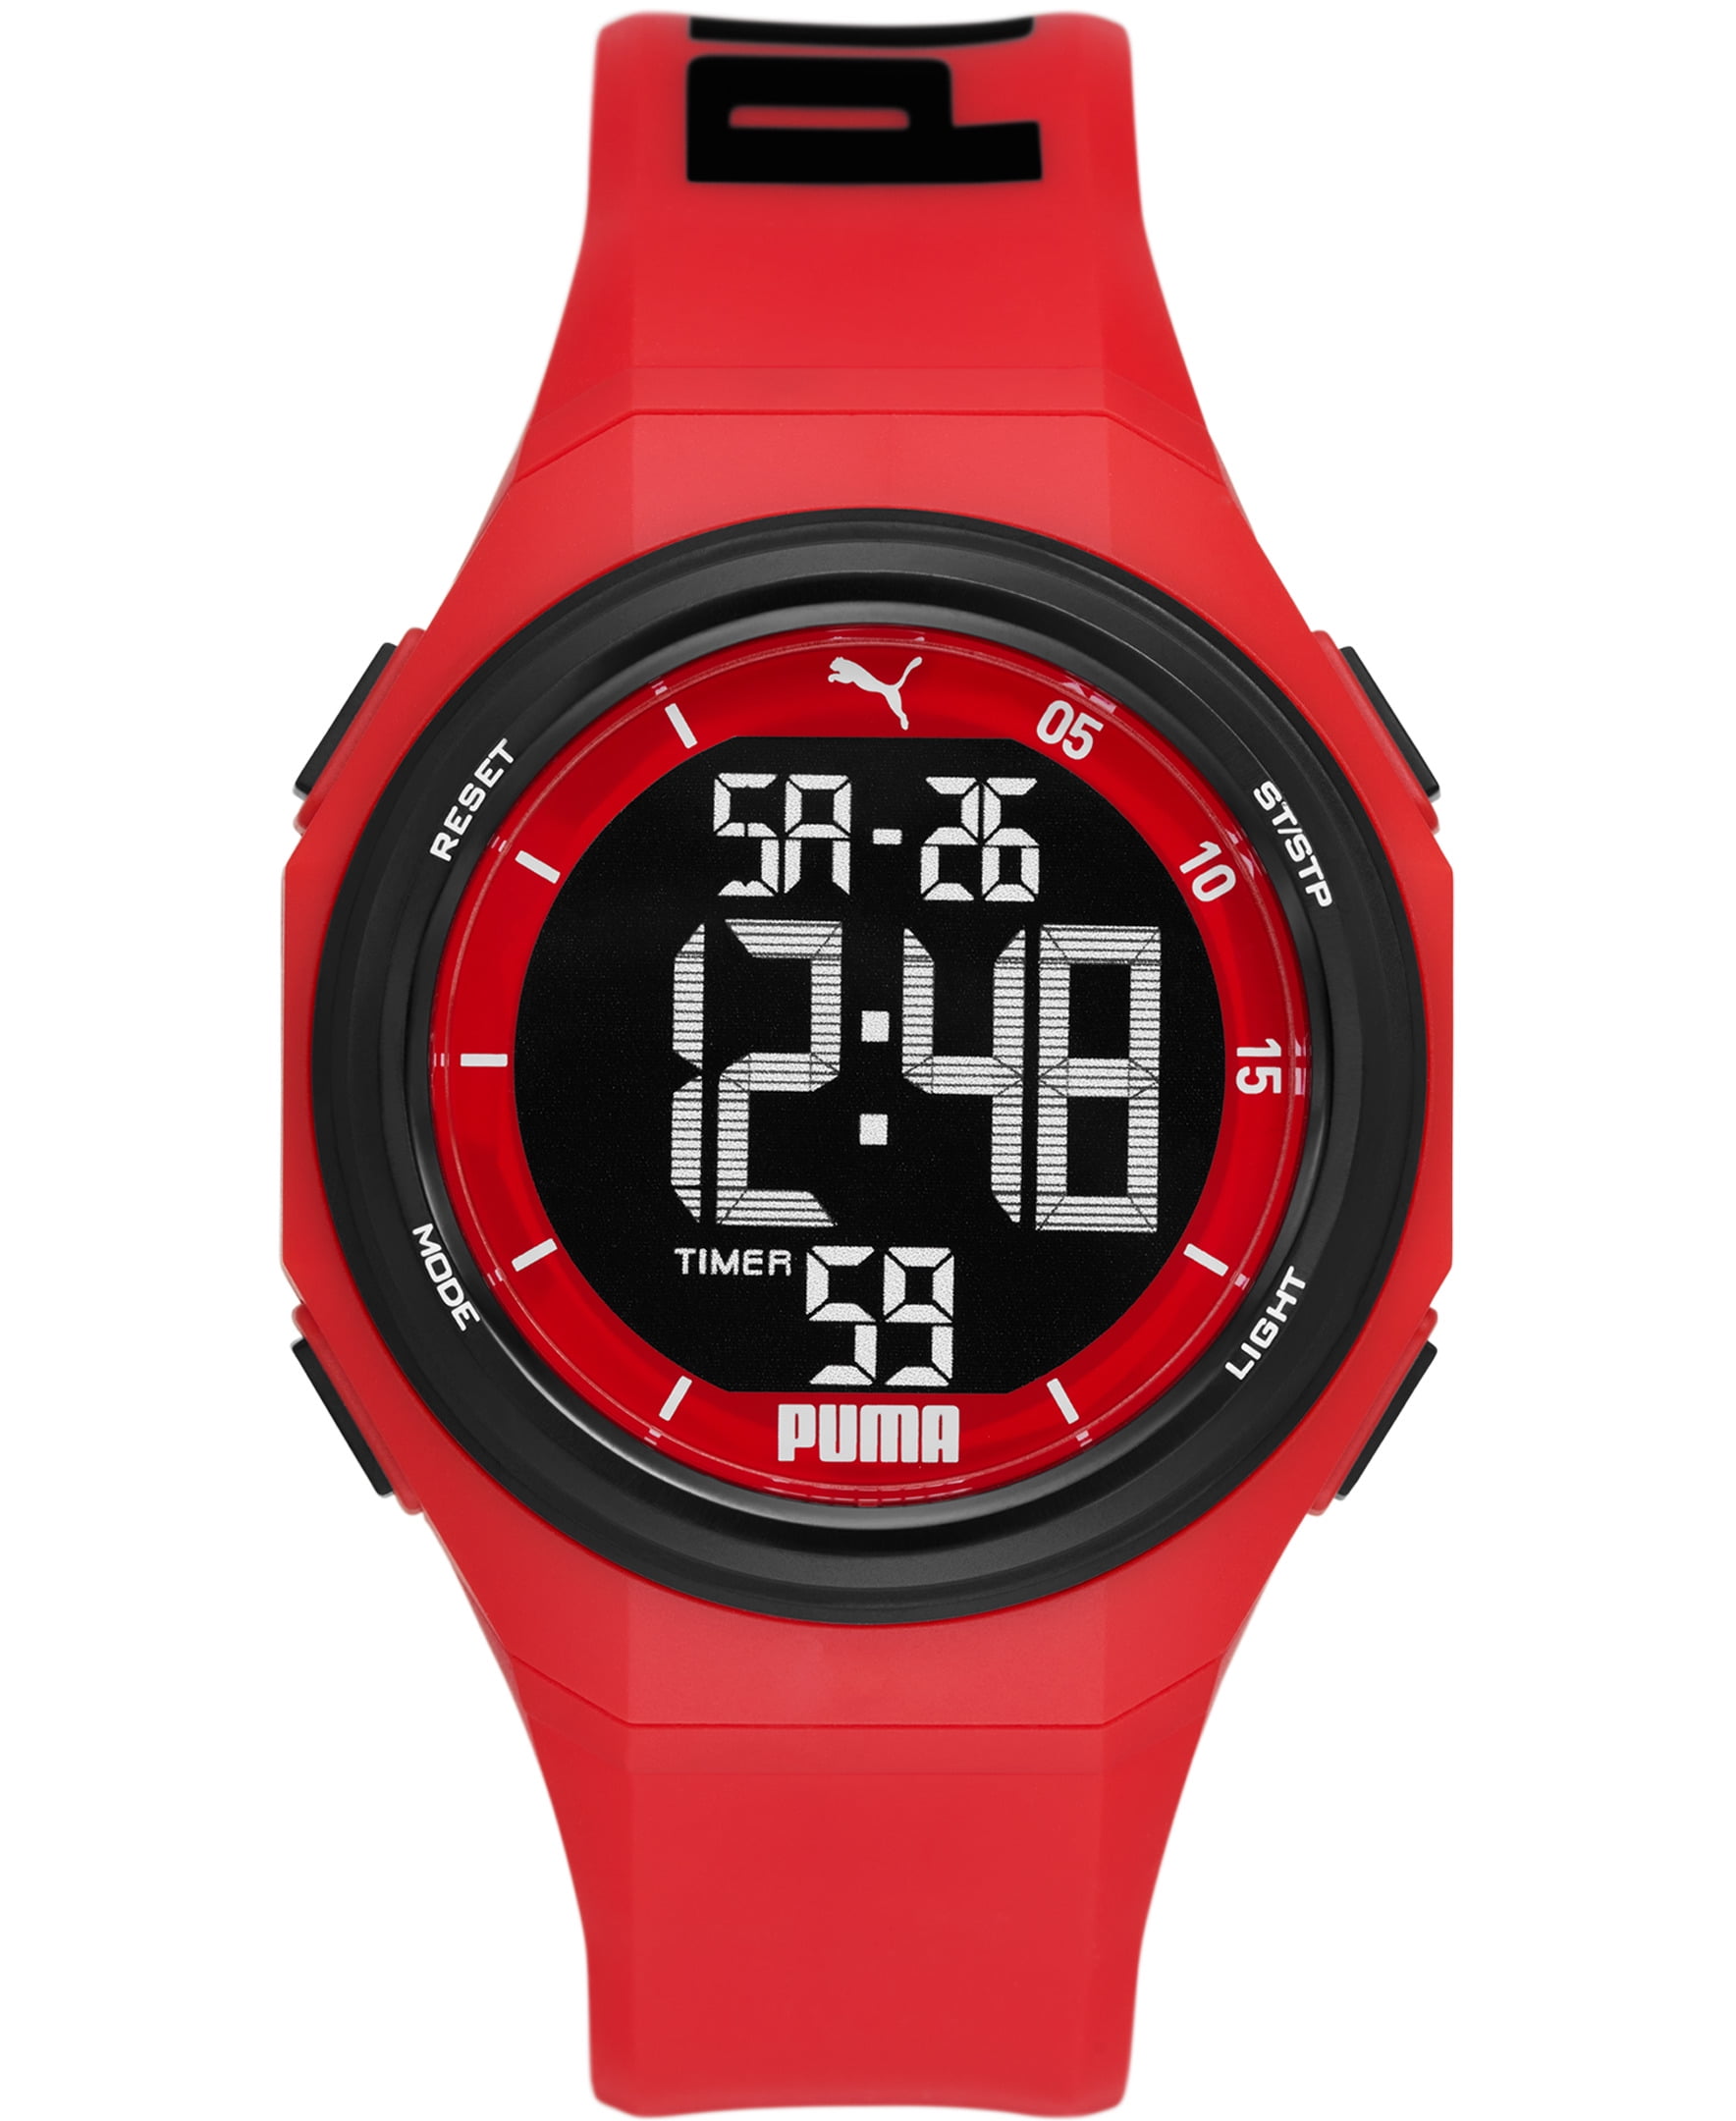 PUMA Puma 9 Digital Black and Red Polyurethane Watch (P6042)